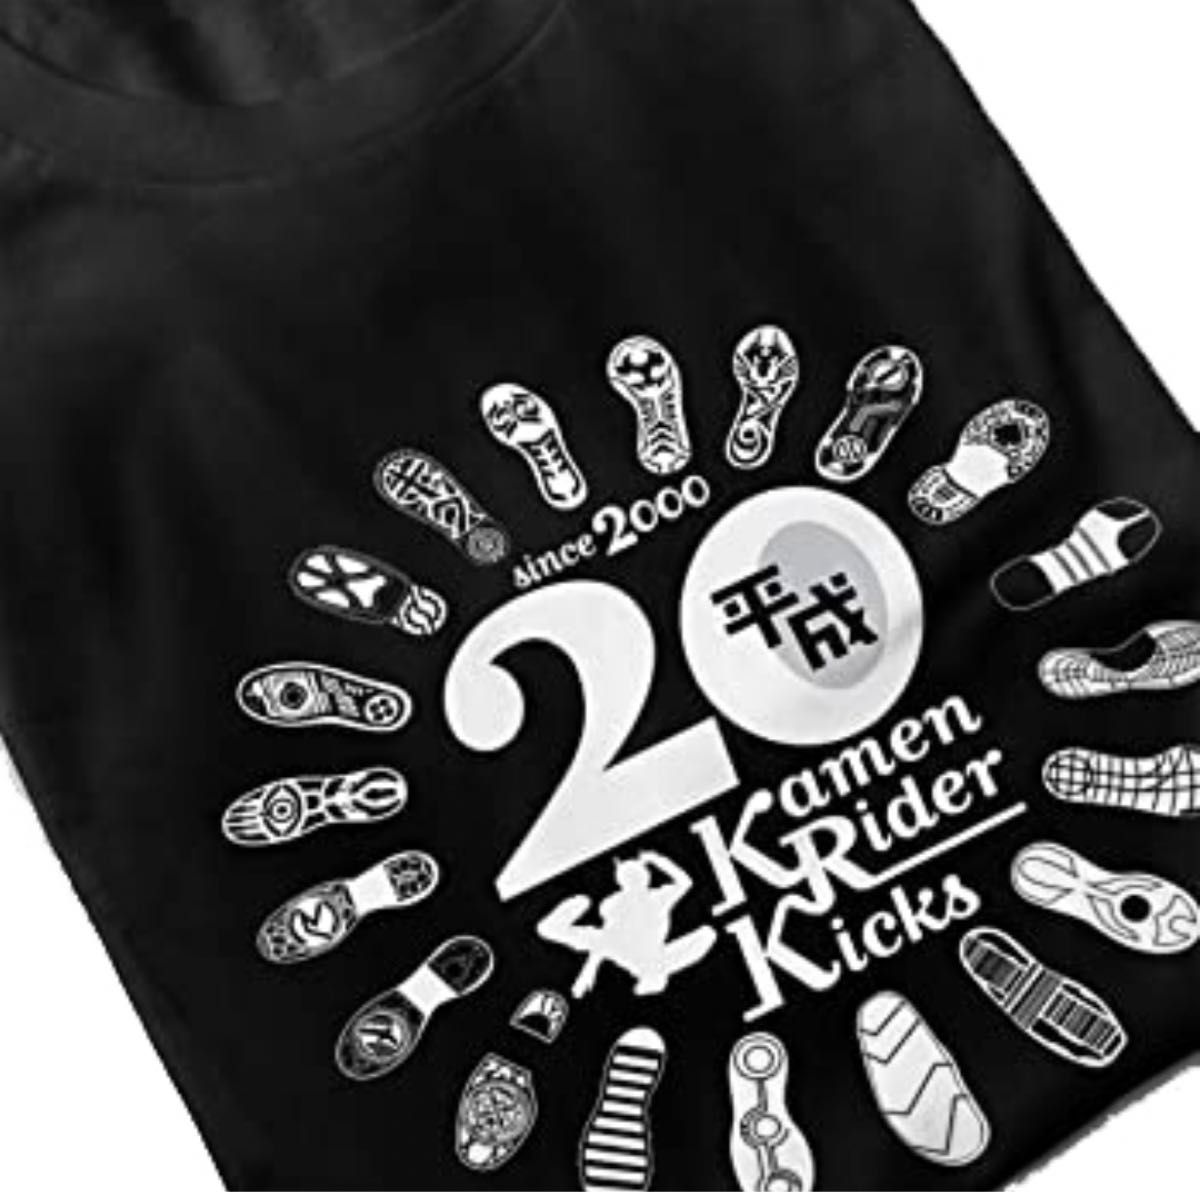 仮面ライダー Tシャツ カットソー 半袖 平成仮面ライダー20周年記念 ライダーキックTシャツ 歴代ライダー 足跡 足裏 Mサイズ